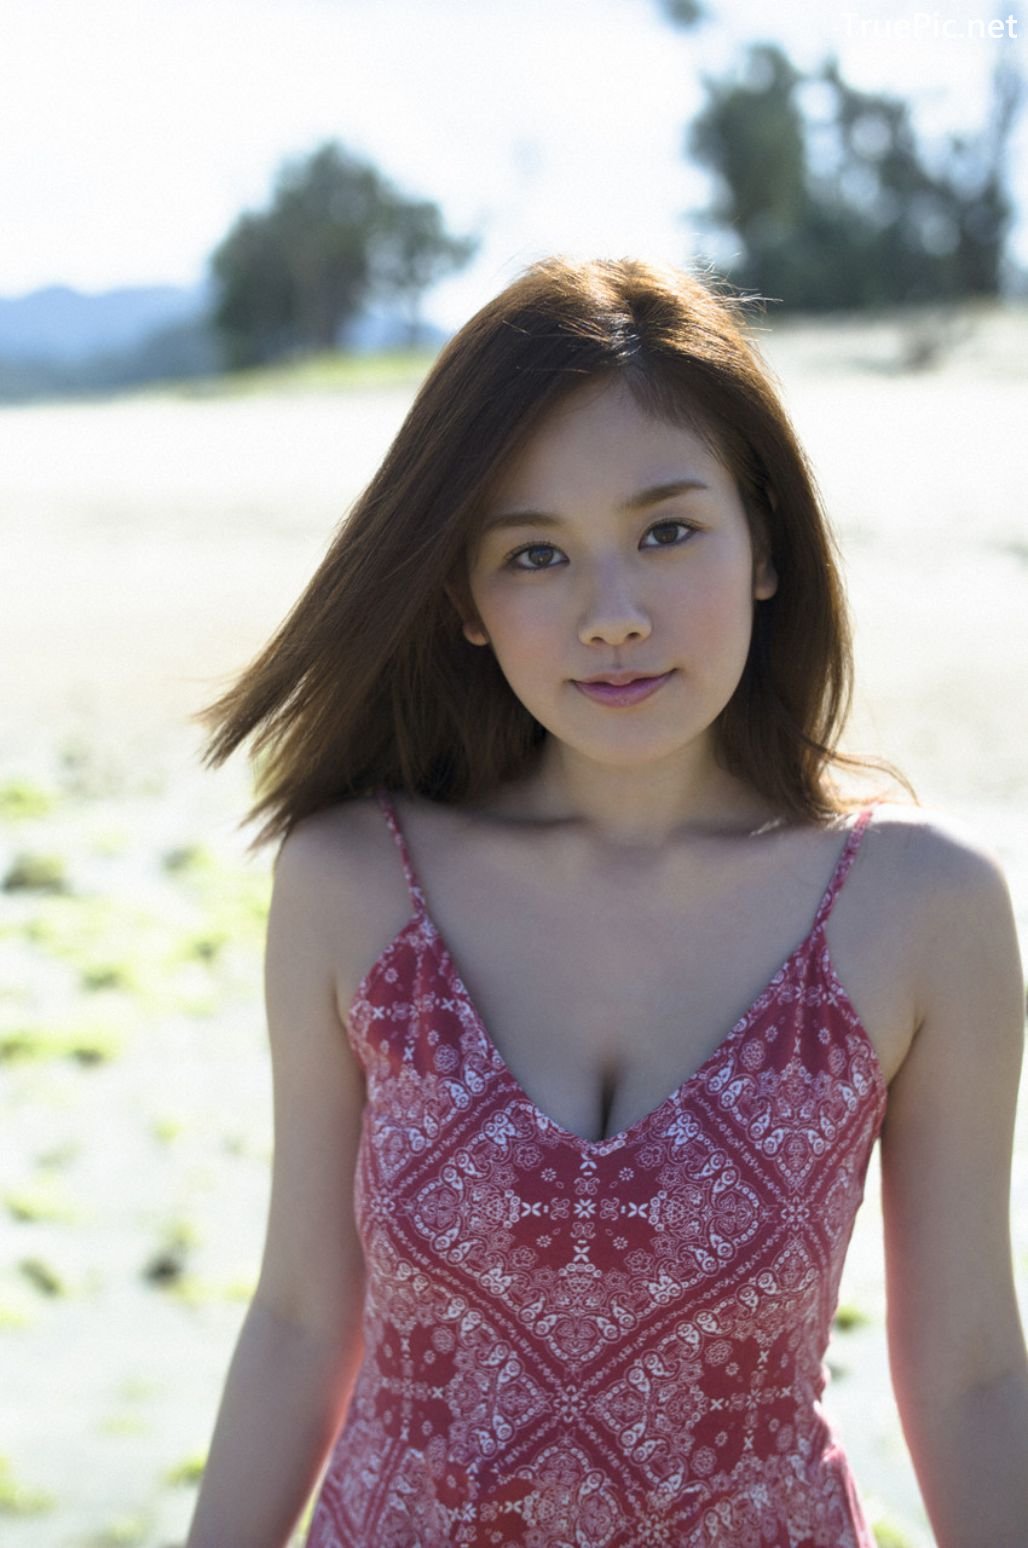 Image-Japanese-Gravure-Idol-Miwako-Kakei-Sexy-Japanese-Angel-With-Hot-Body-TruePic.net- Picture-44